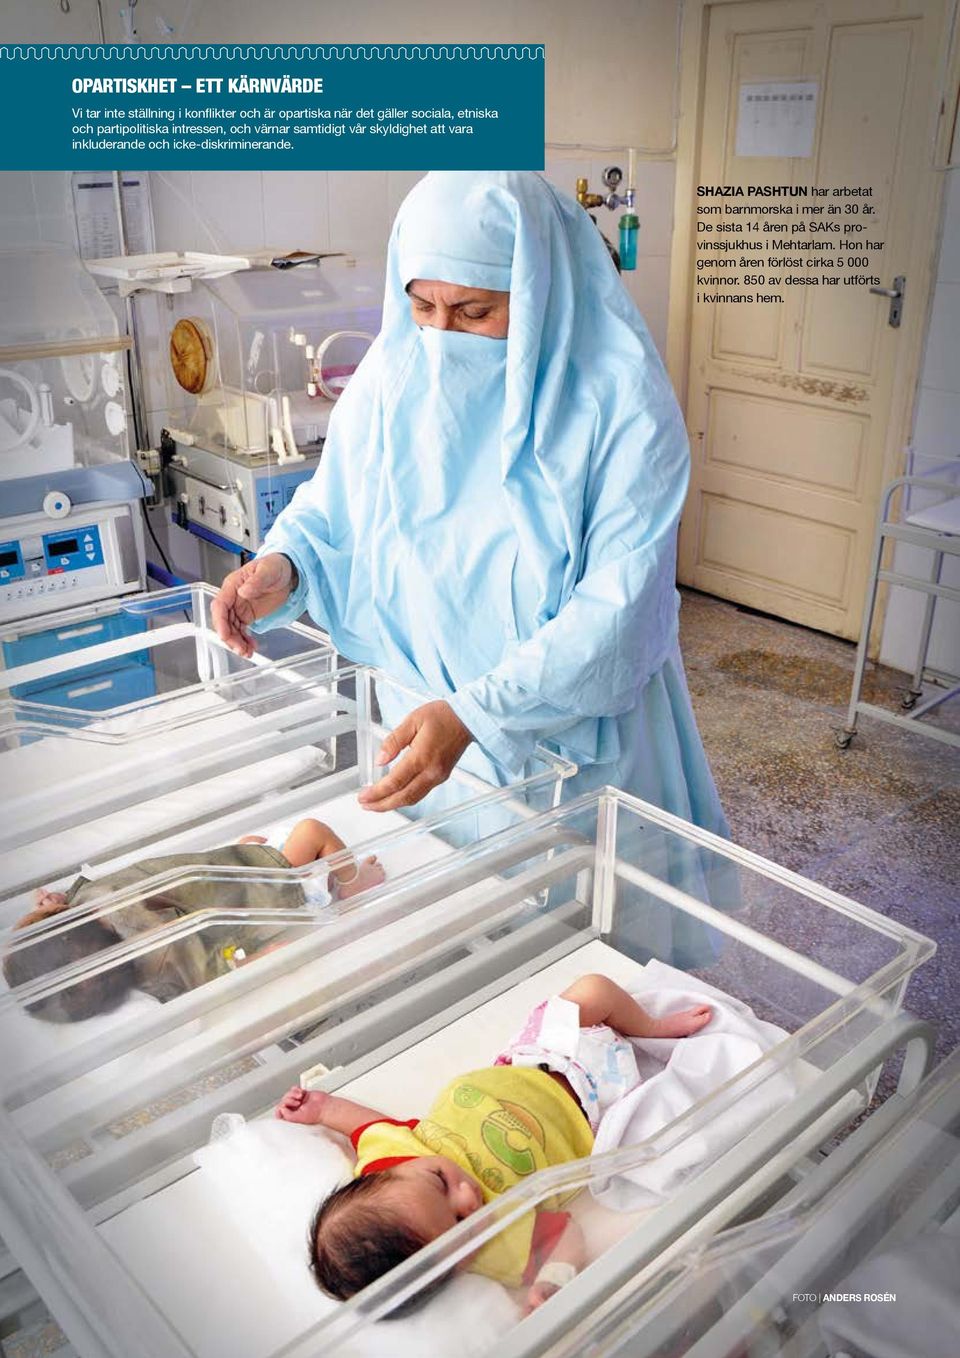 icke-diskriminerande. SHAZIA PASHTUN har arbetat som barnmorska i mer än 30 år.